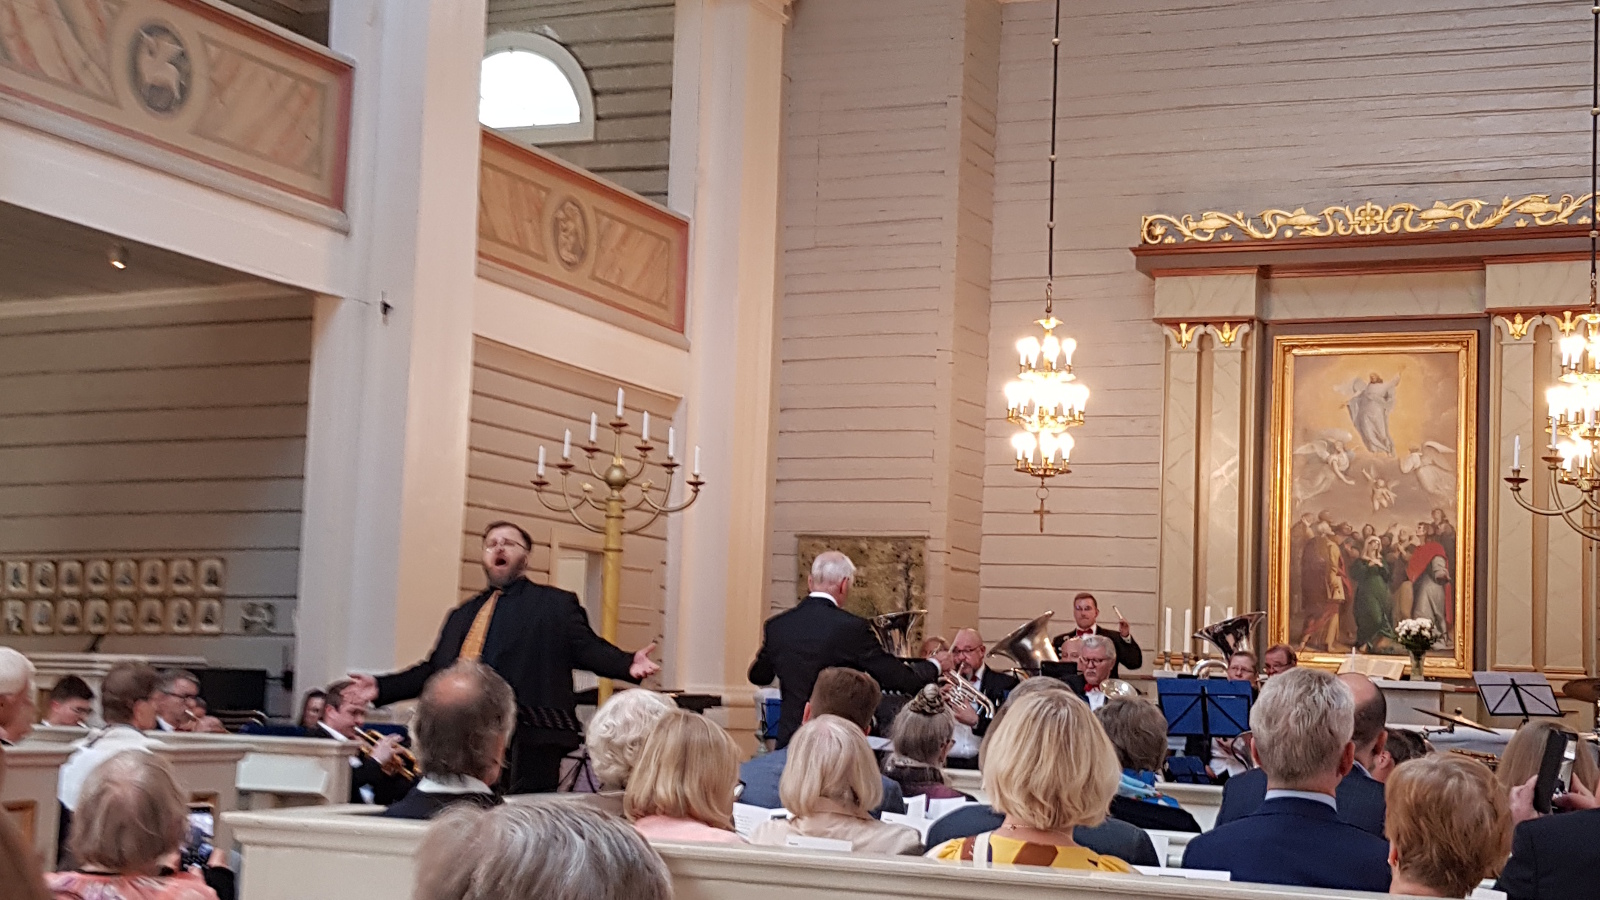 Kuvassa on Mika Nisula laulamassa kädet levitettyinä ja taustalla on Töölö Brassin soittajat.  Molemmin puolin näkyy yleisöä istumassa selin.